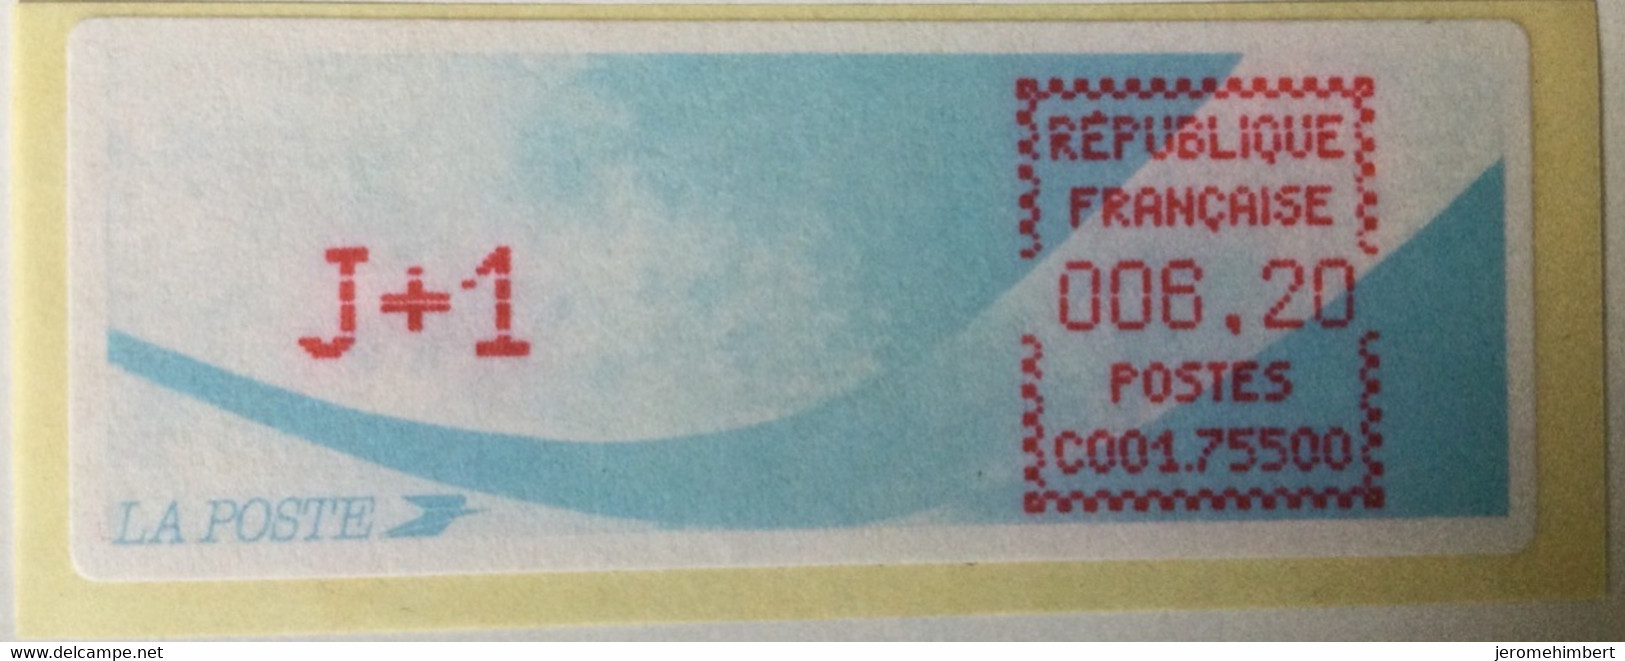 ATM LISA 6,2f J+1 Encre Rouge C0001 75505 - 1988 Type « Comète »